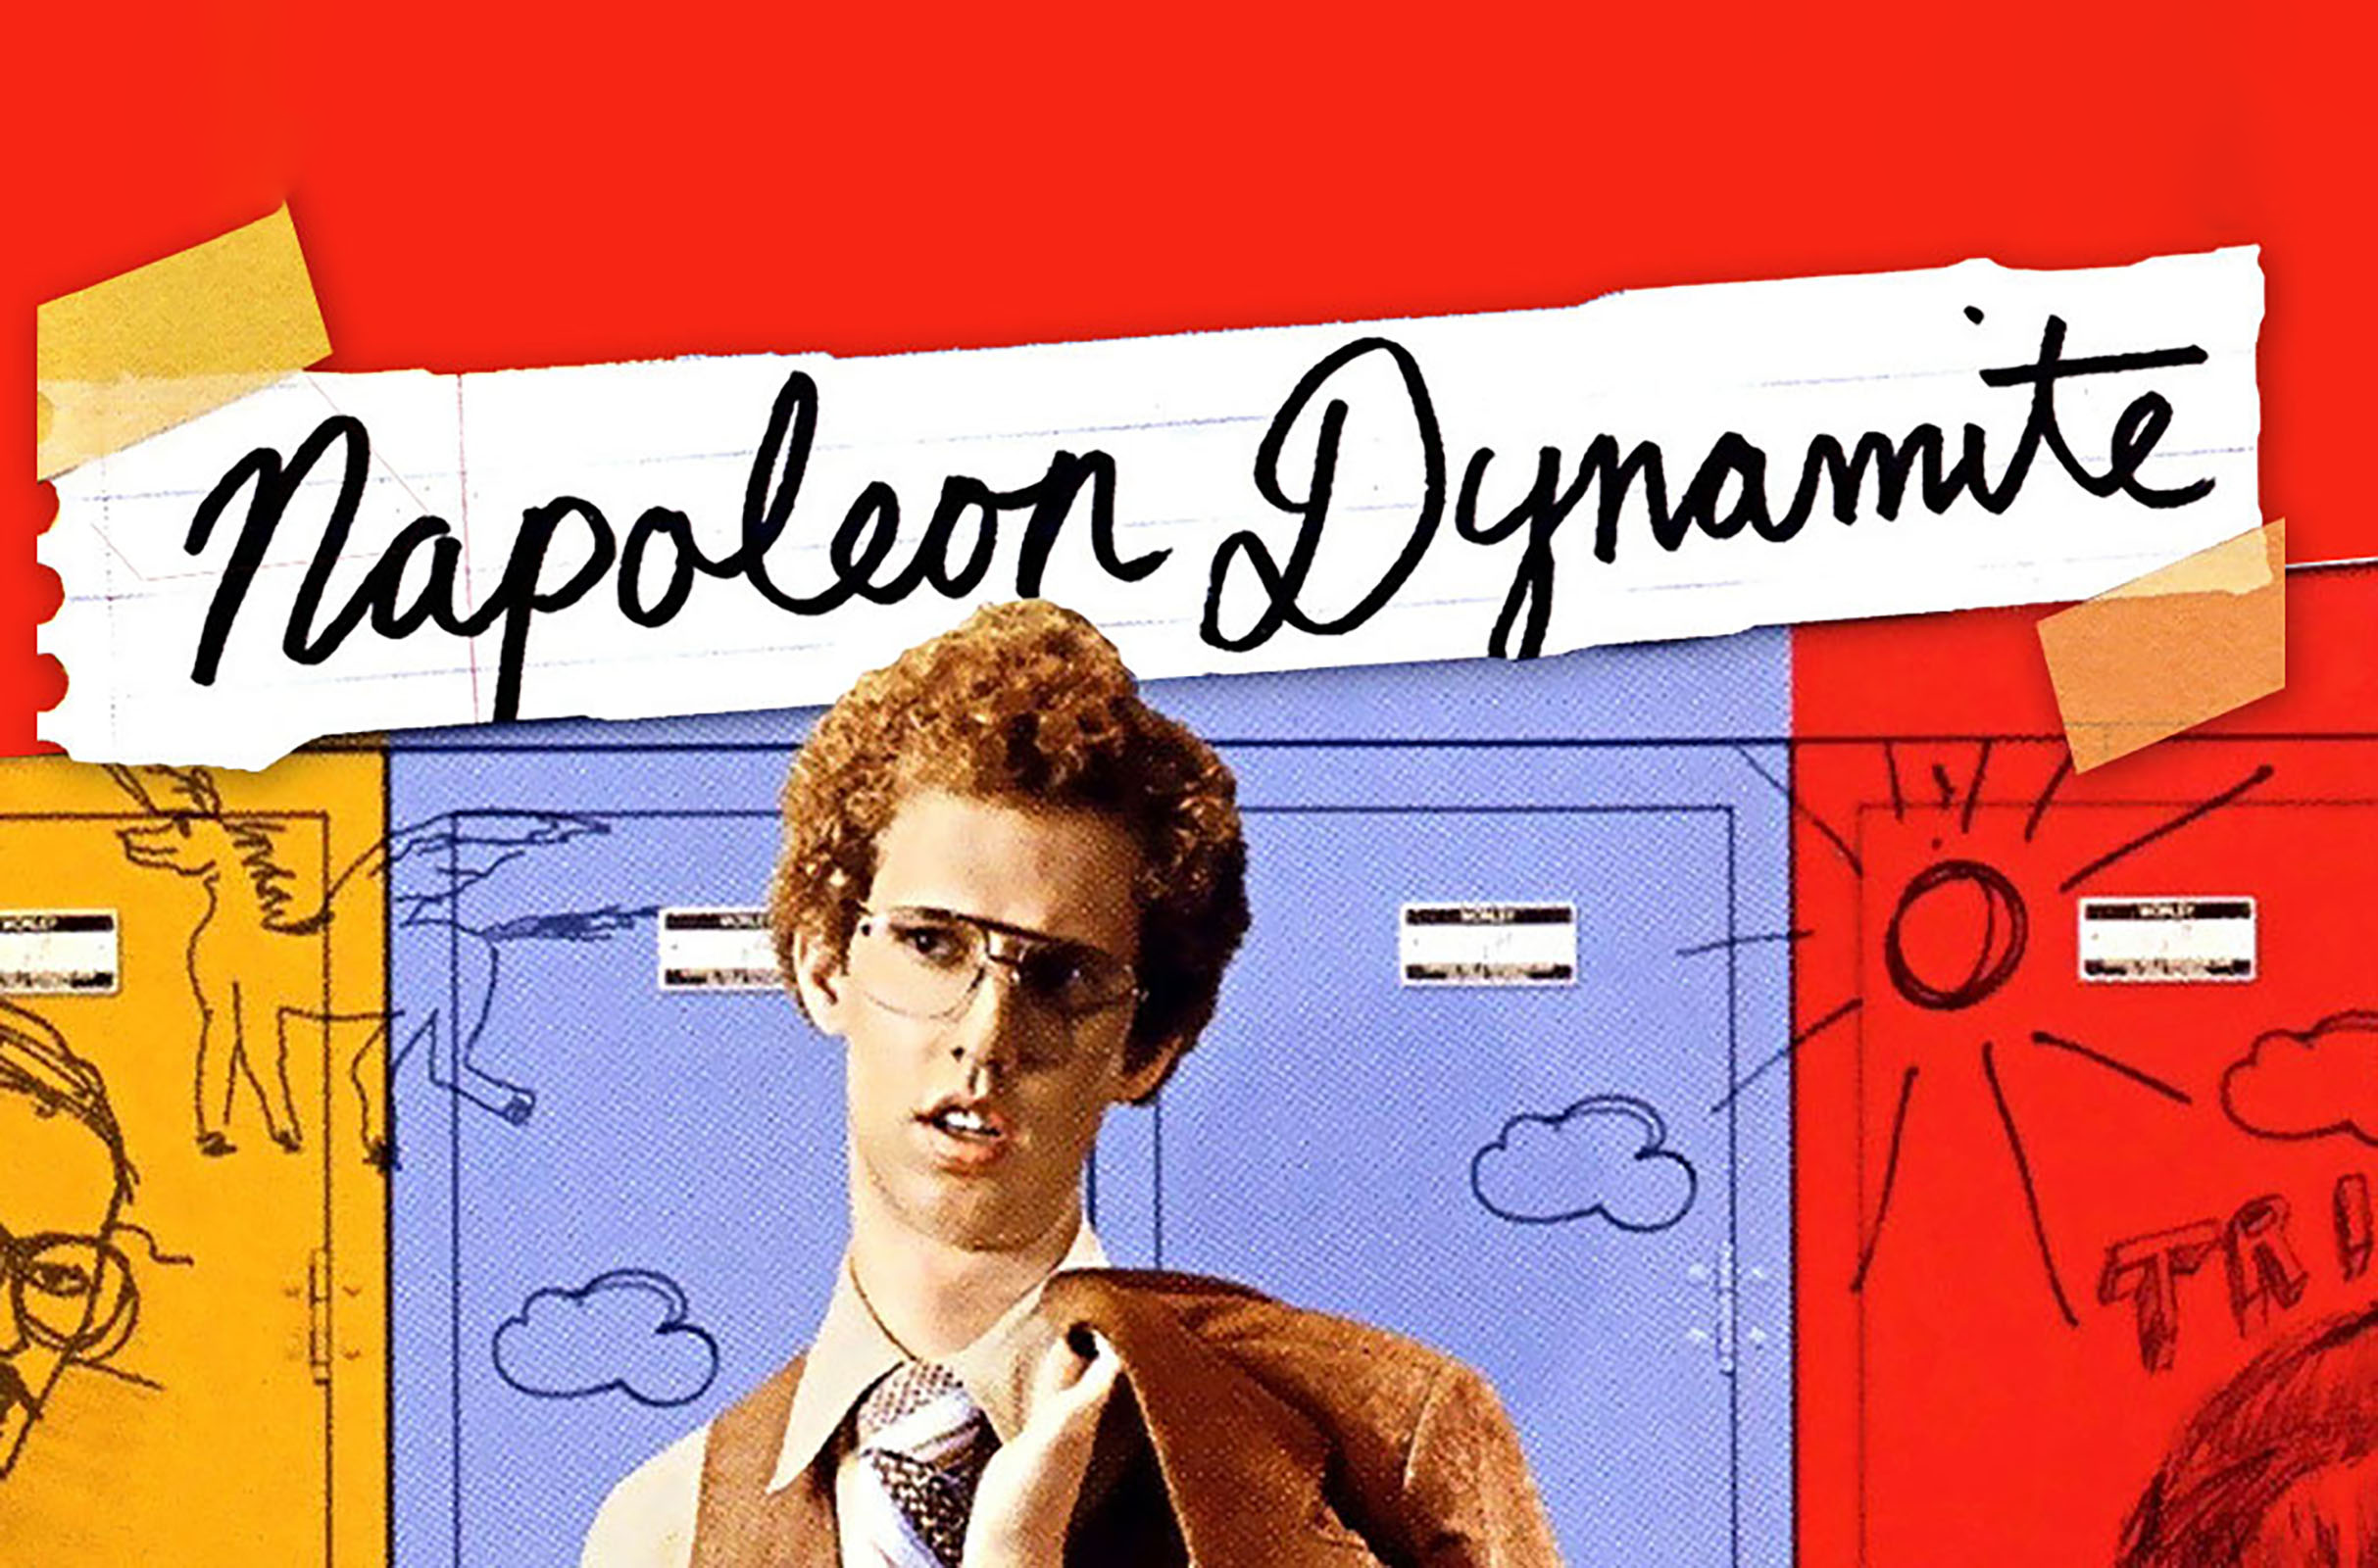 Napoleon Dynamite Live! in Napa promo photo for Headliner presale offer code